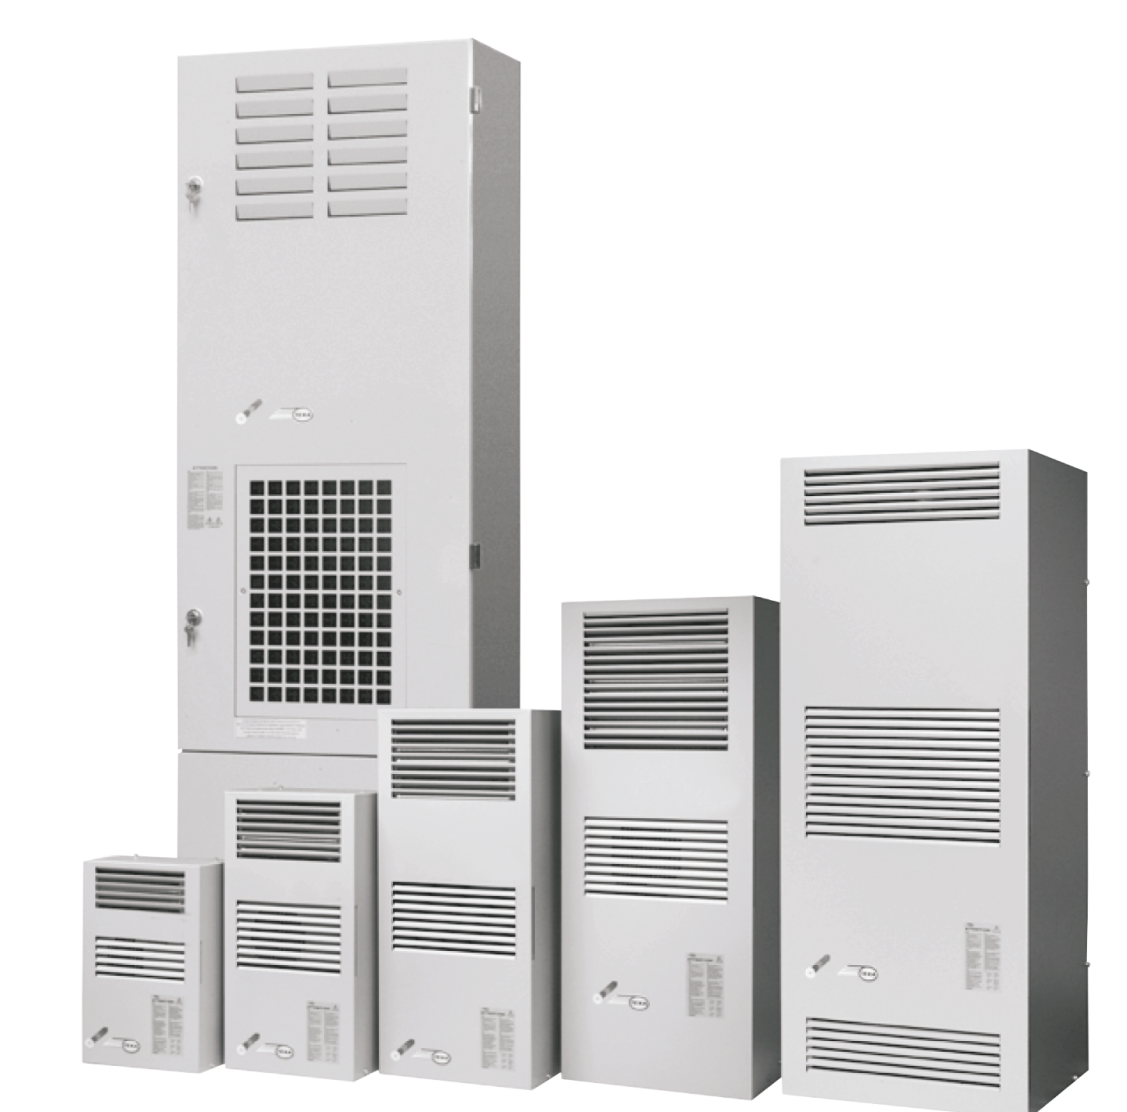 Air conditioner EGO08 (230V, 50-60Hz, 820W)